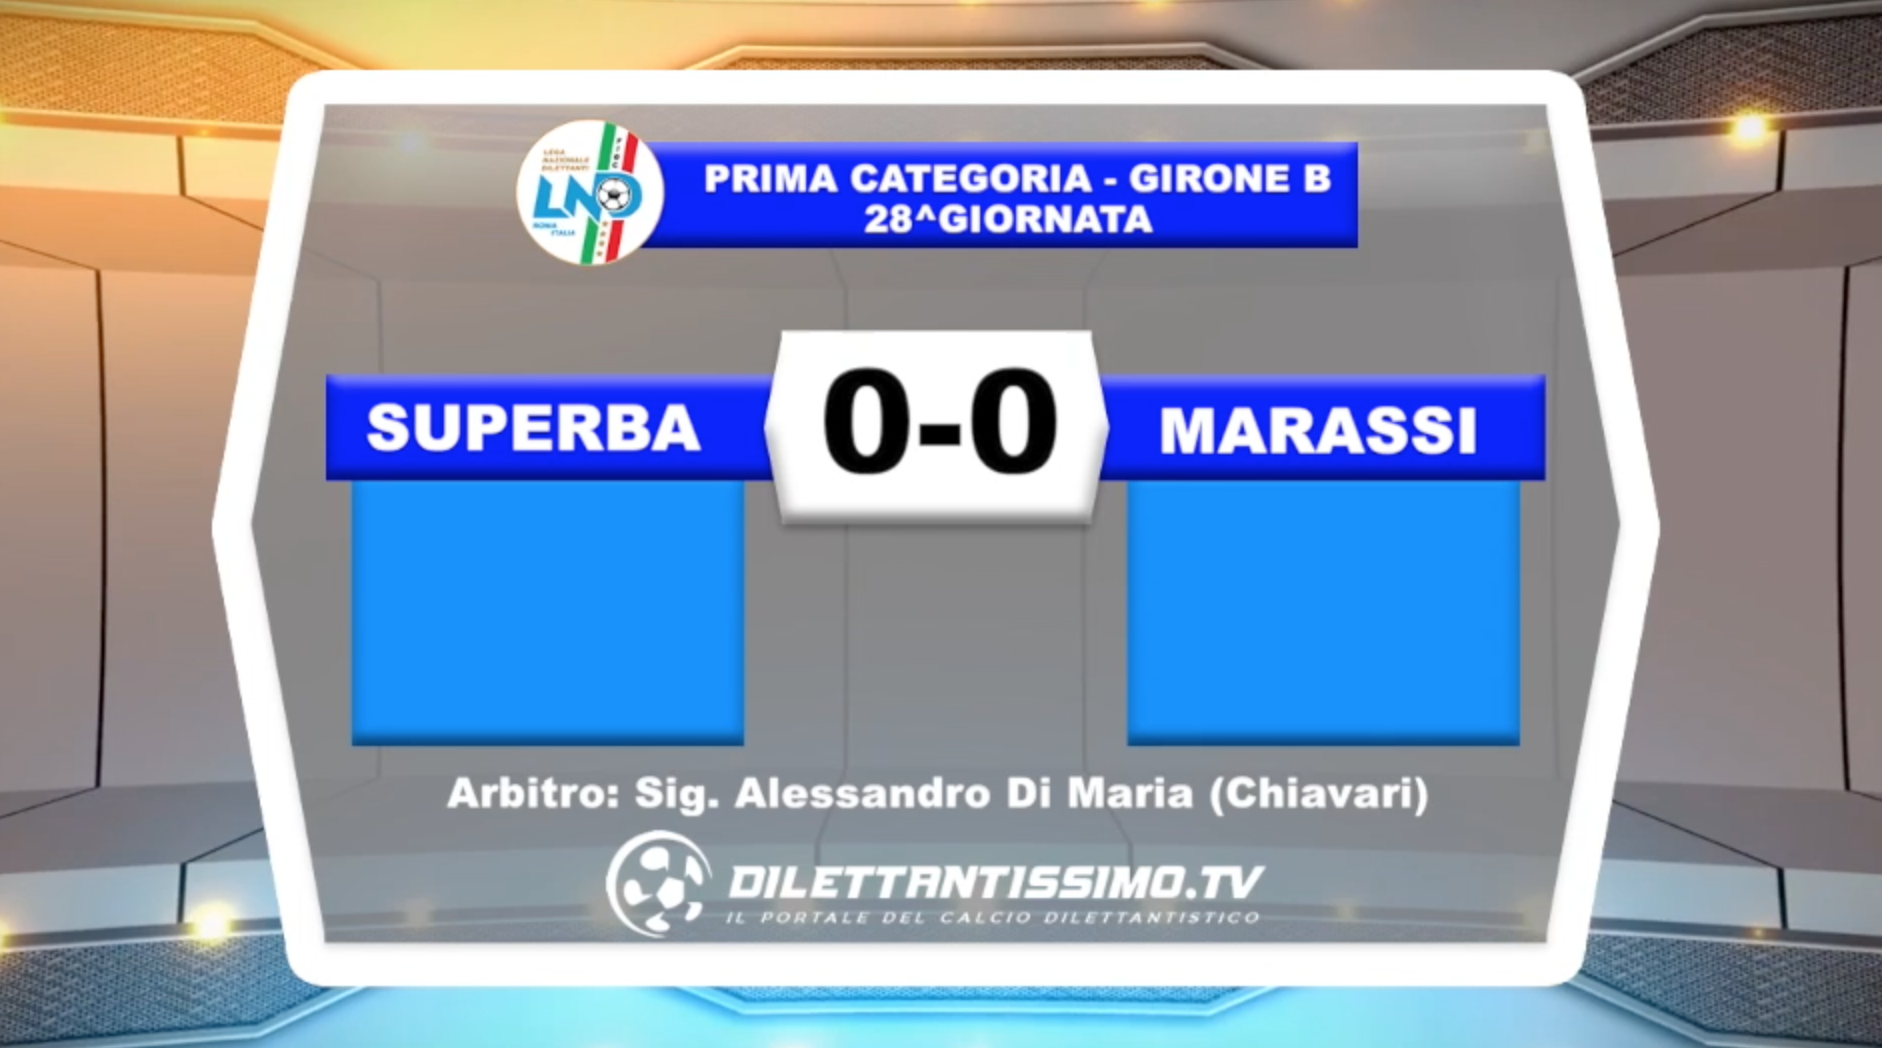 VIDEO – Superba-Marassi 0-0: il servizio del match e le interviste